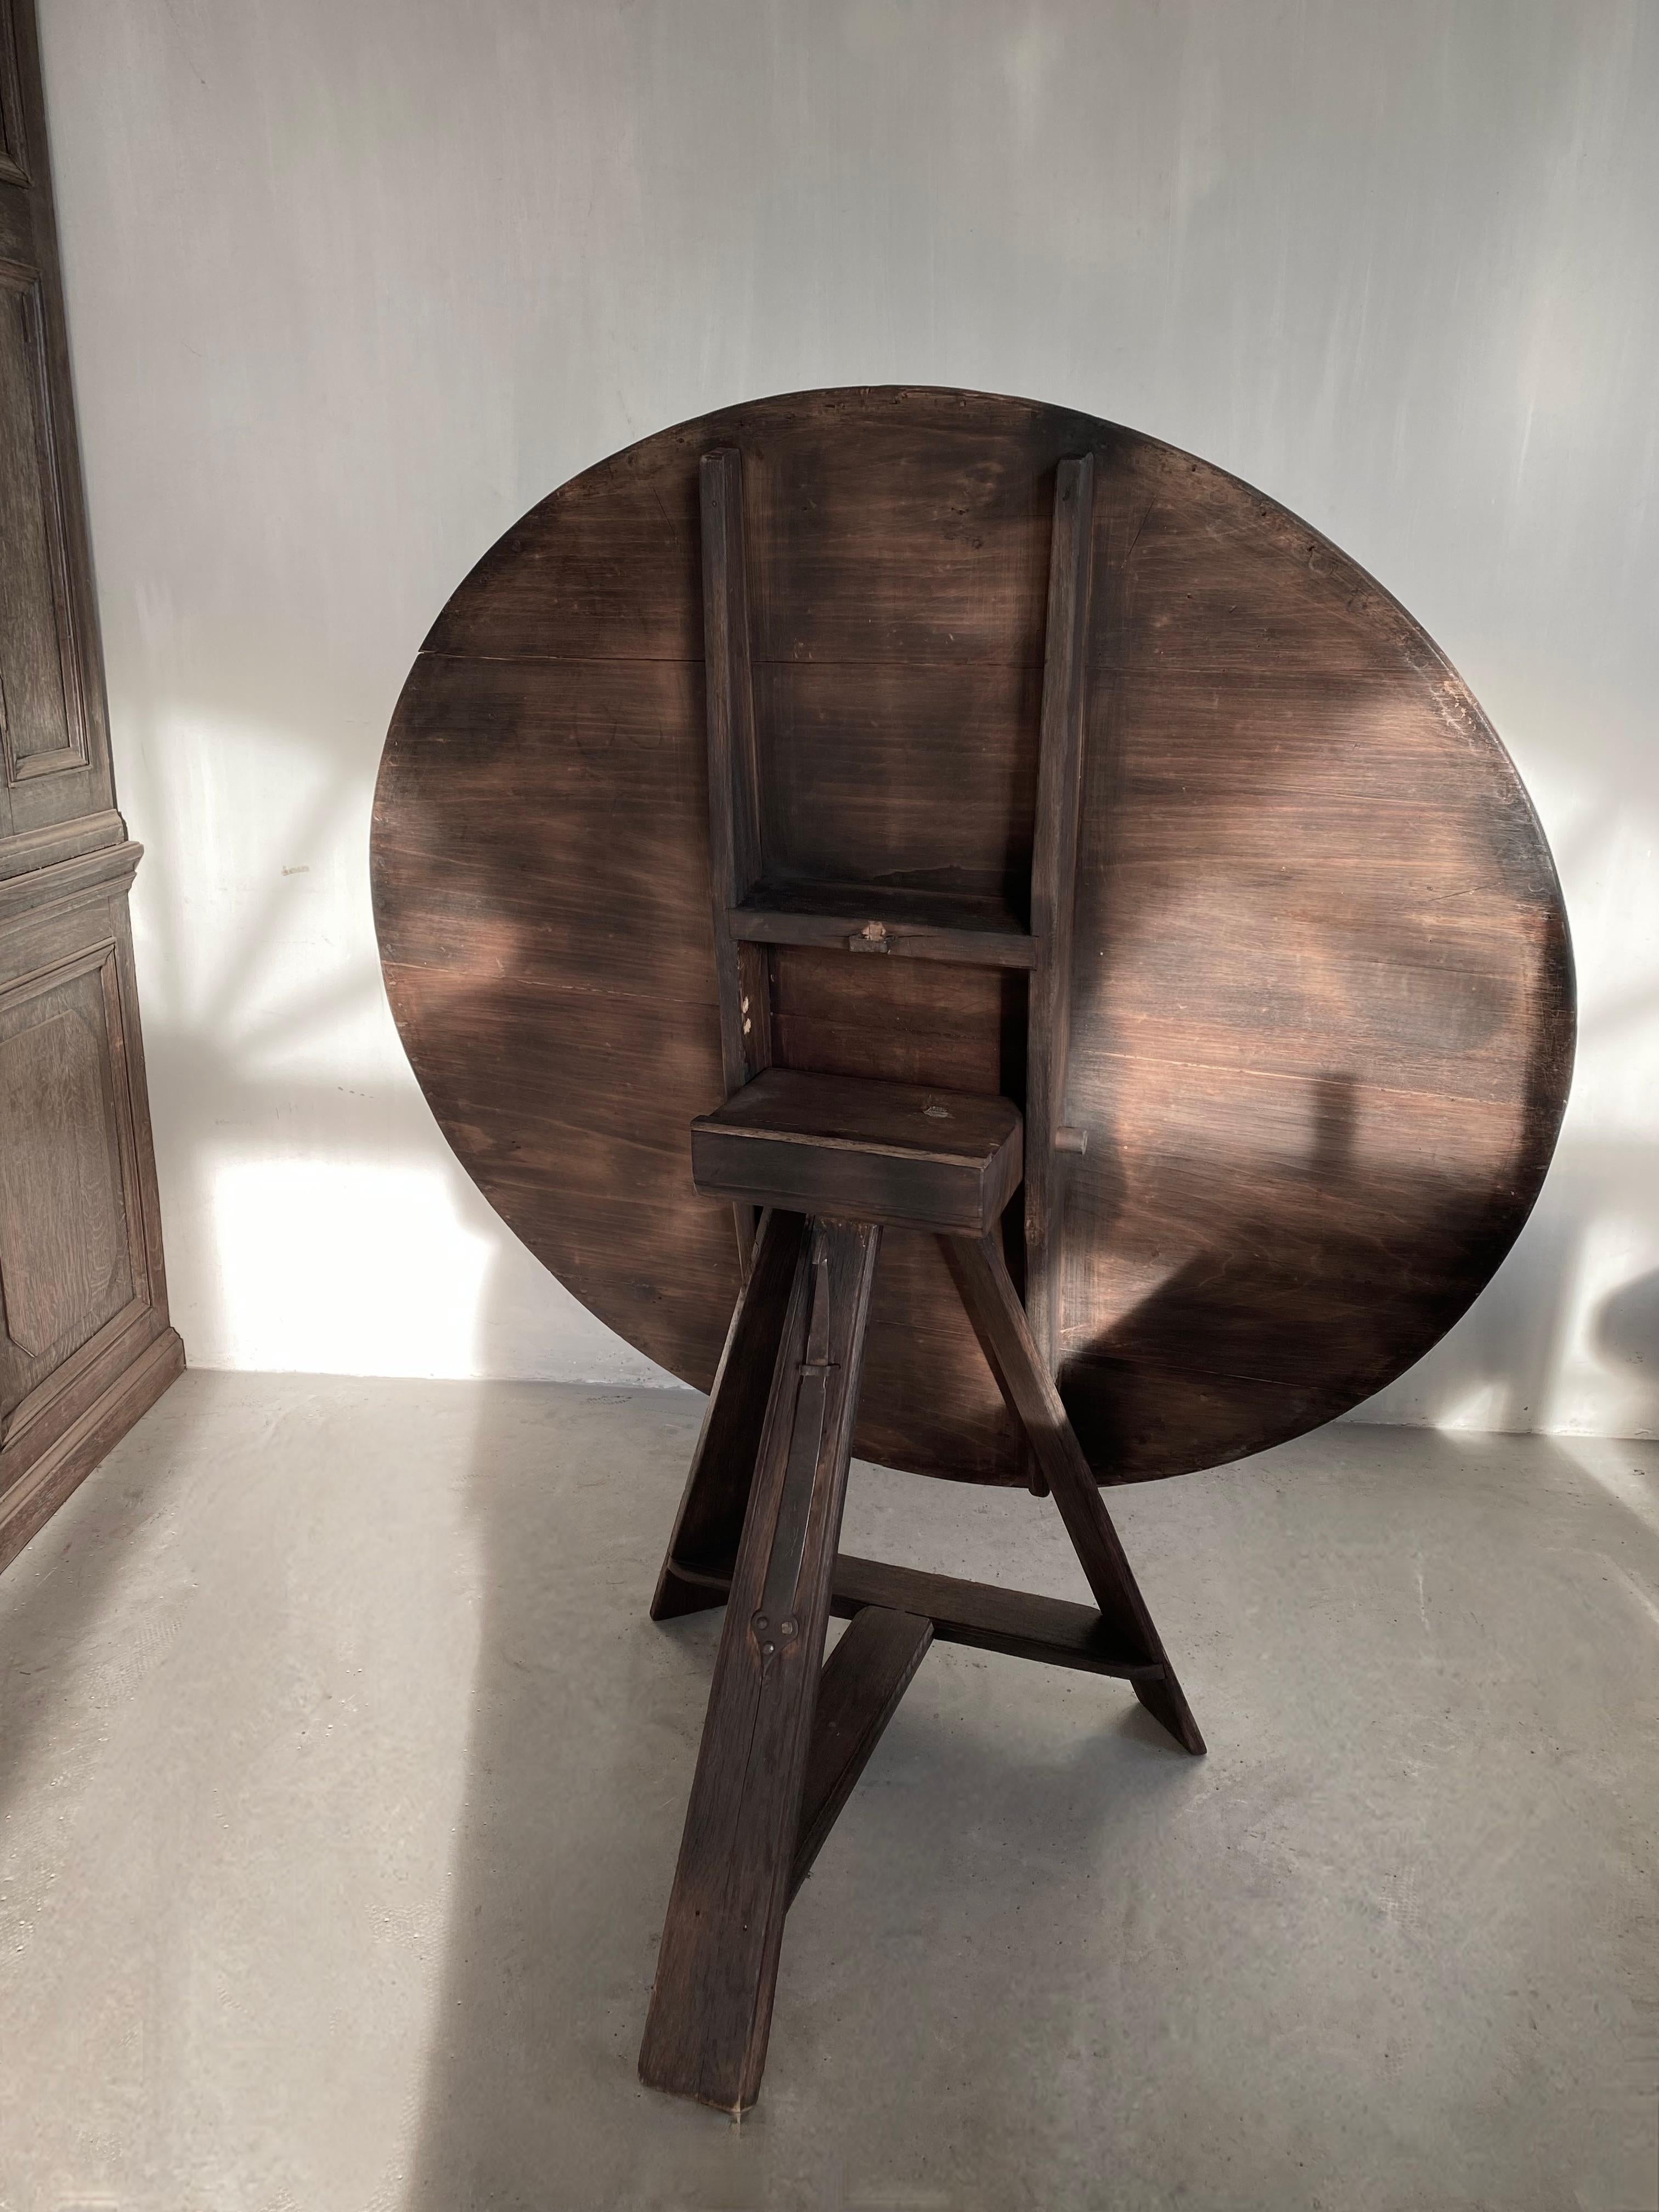 Dieser schöne und völlig originelle holländische Klapptisch ist ein Unikat.
In sehr gutem Zustand mit dem originalen Stahlgriff aus dem 19. Jahrhundert, mit dem die Tafel an den Beinen befestigt wird.

Der perfekte Tisch neben dem Sofa oder im